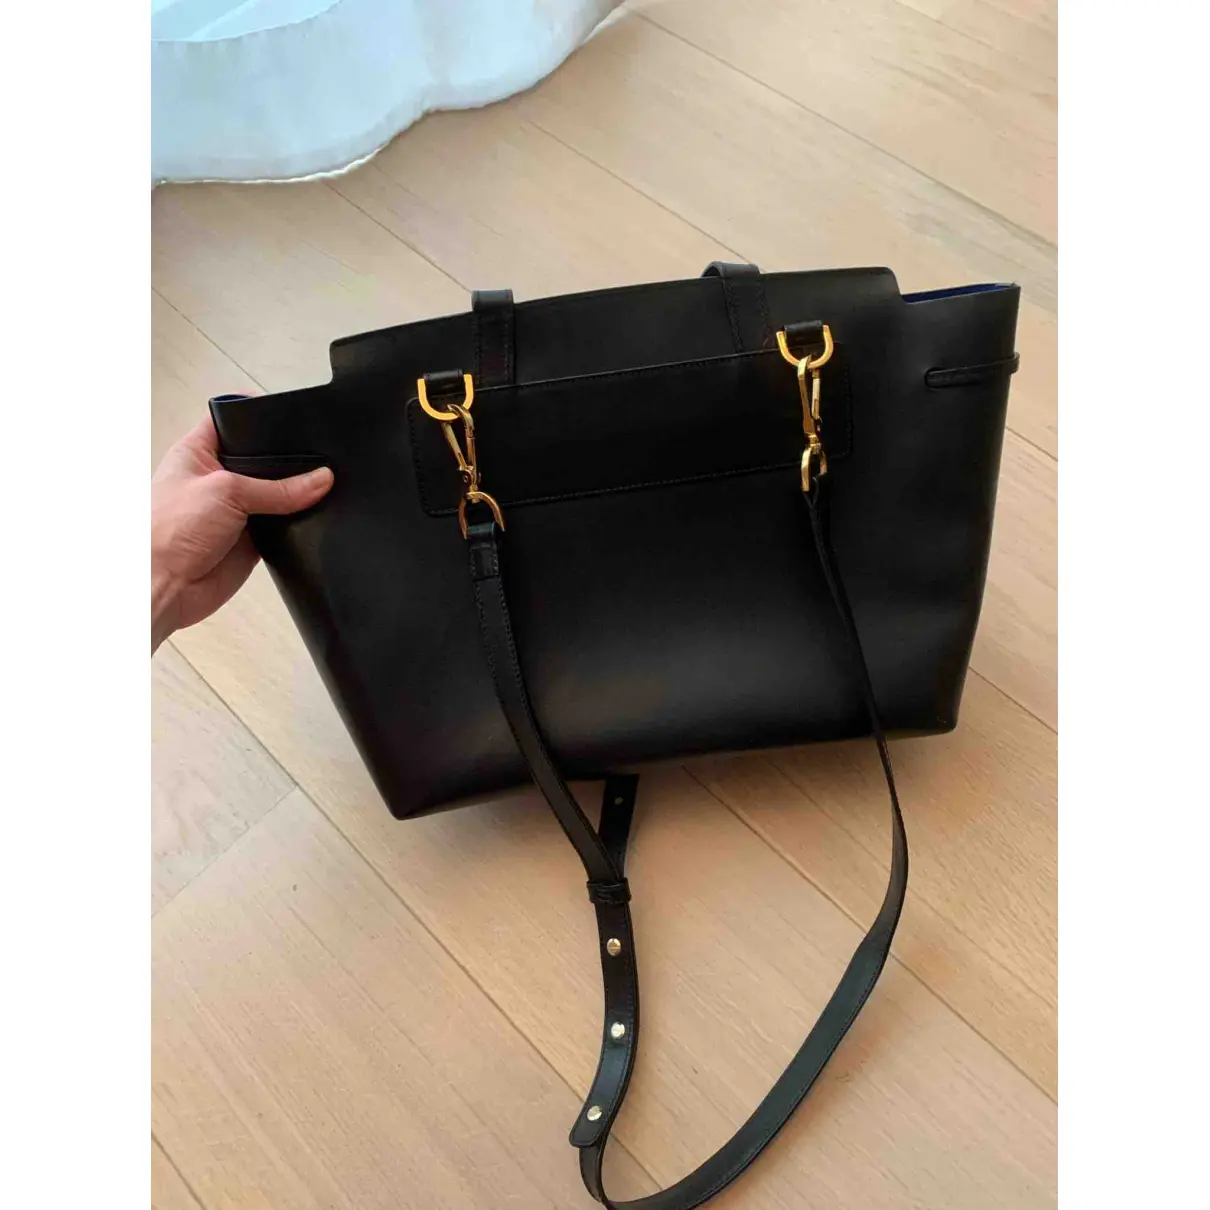 Buy Mansur Gavriel Lady leather handbag online